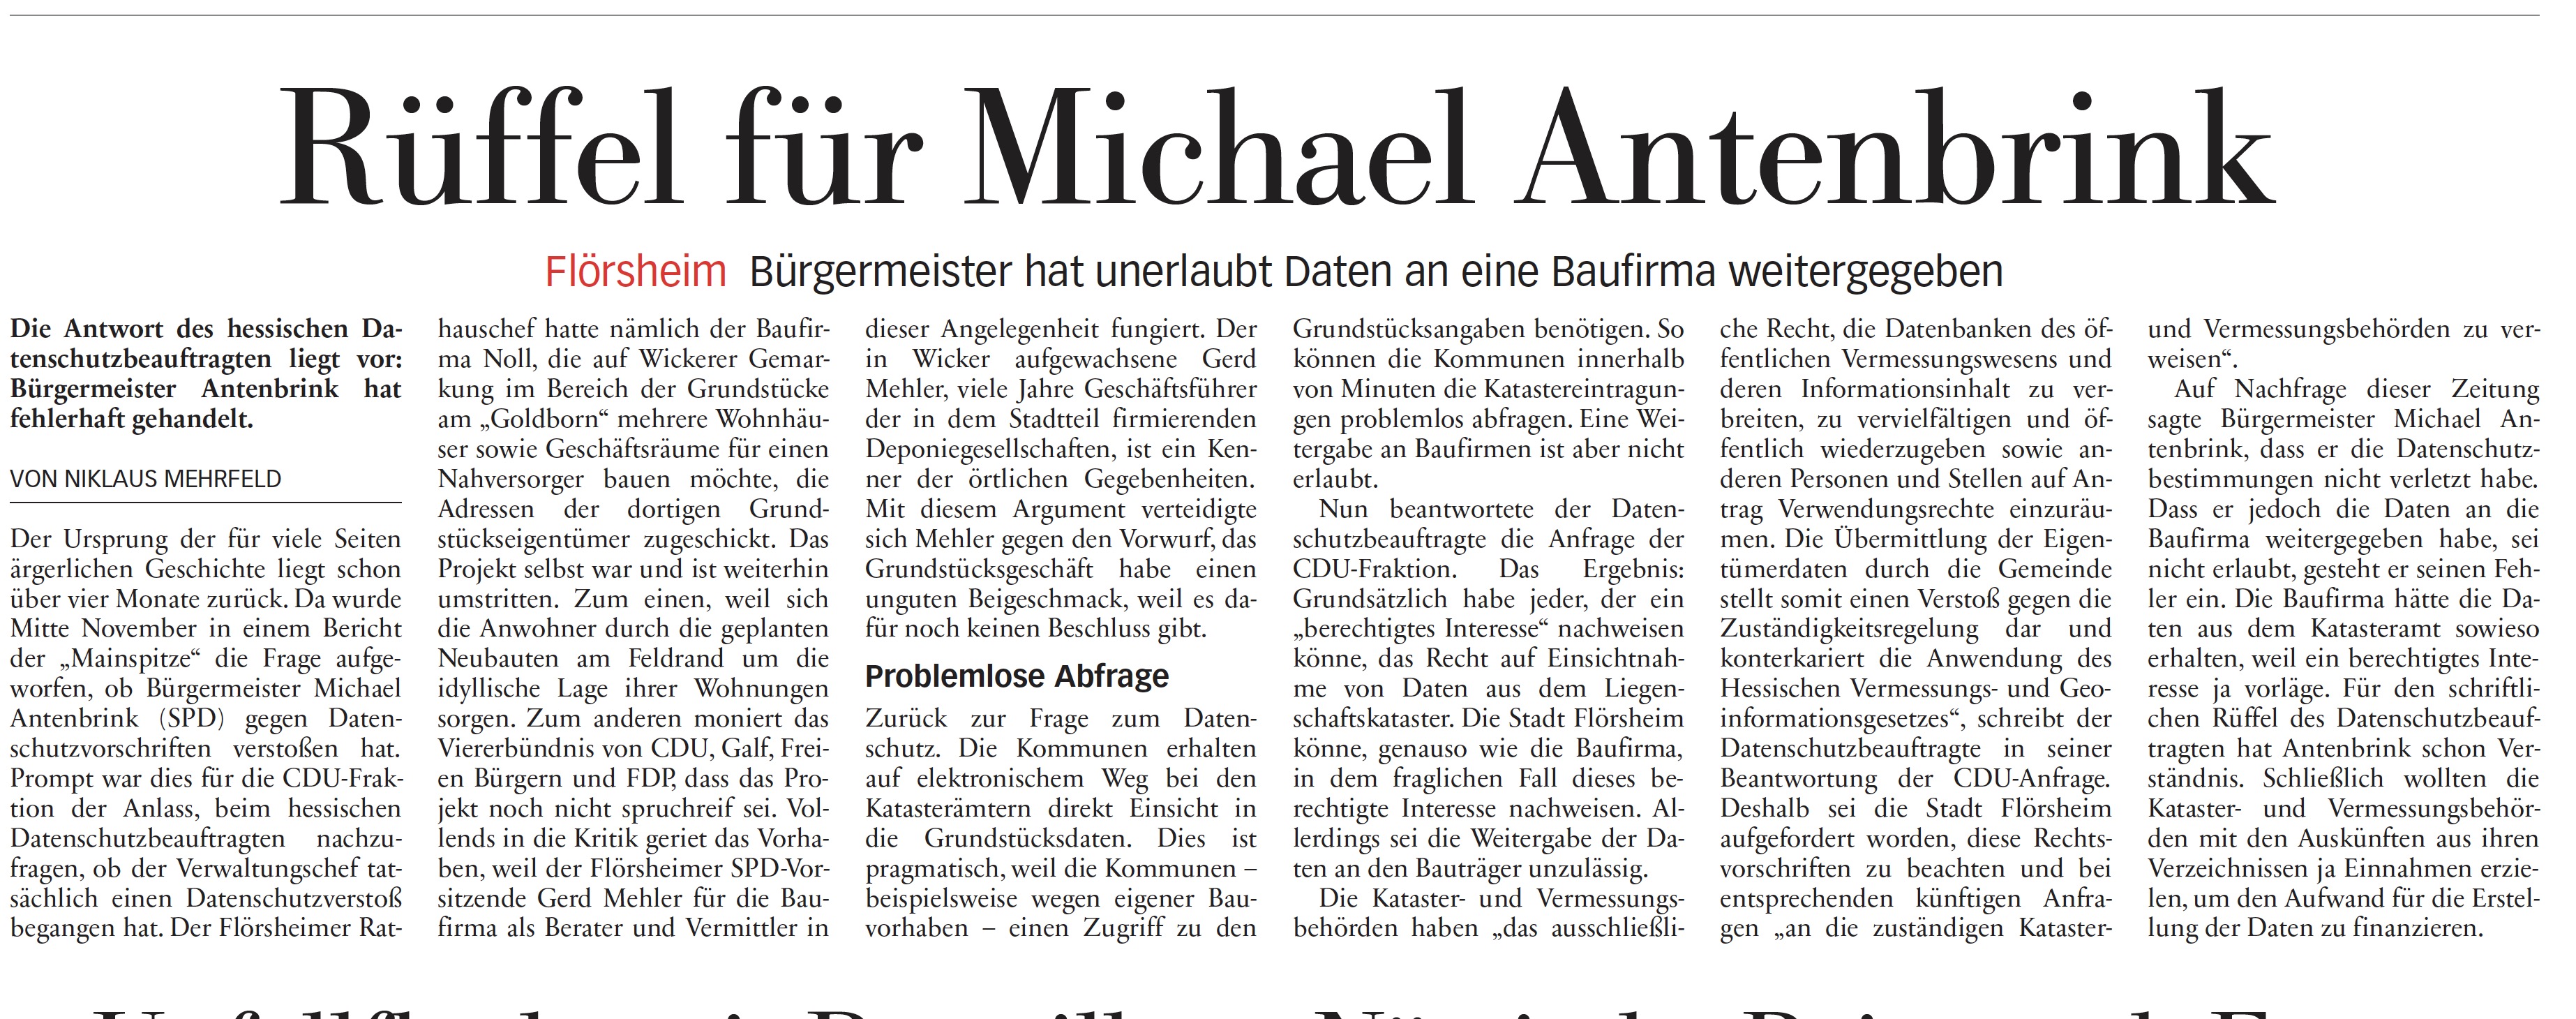 Höchster Kreisblatt: Rüffel für Michael Antenbrink